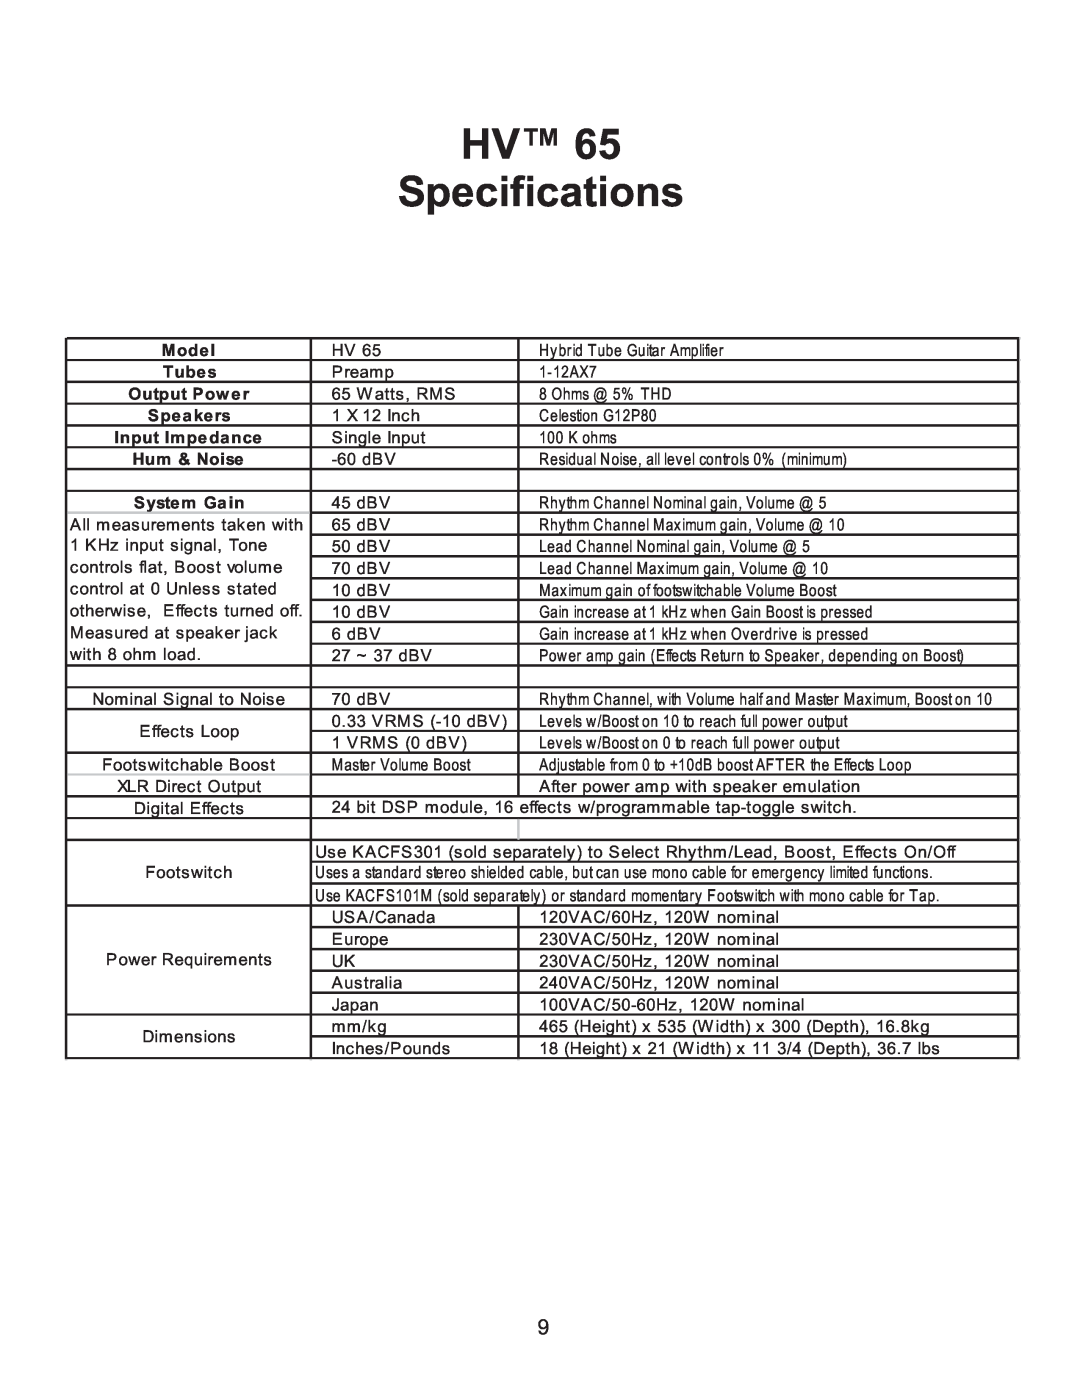 Kustom HV65 owner manual HV Specifications, Mode l, Hum & Noise 